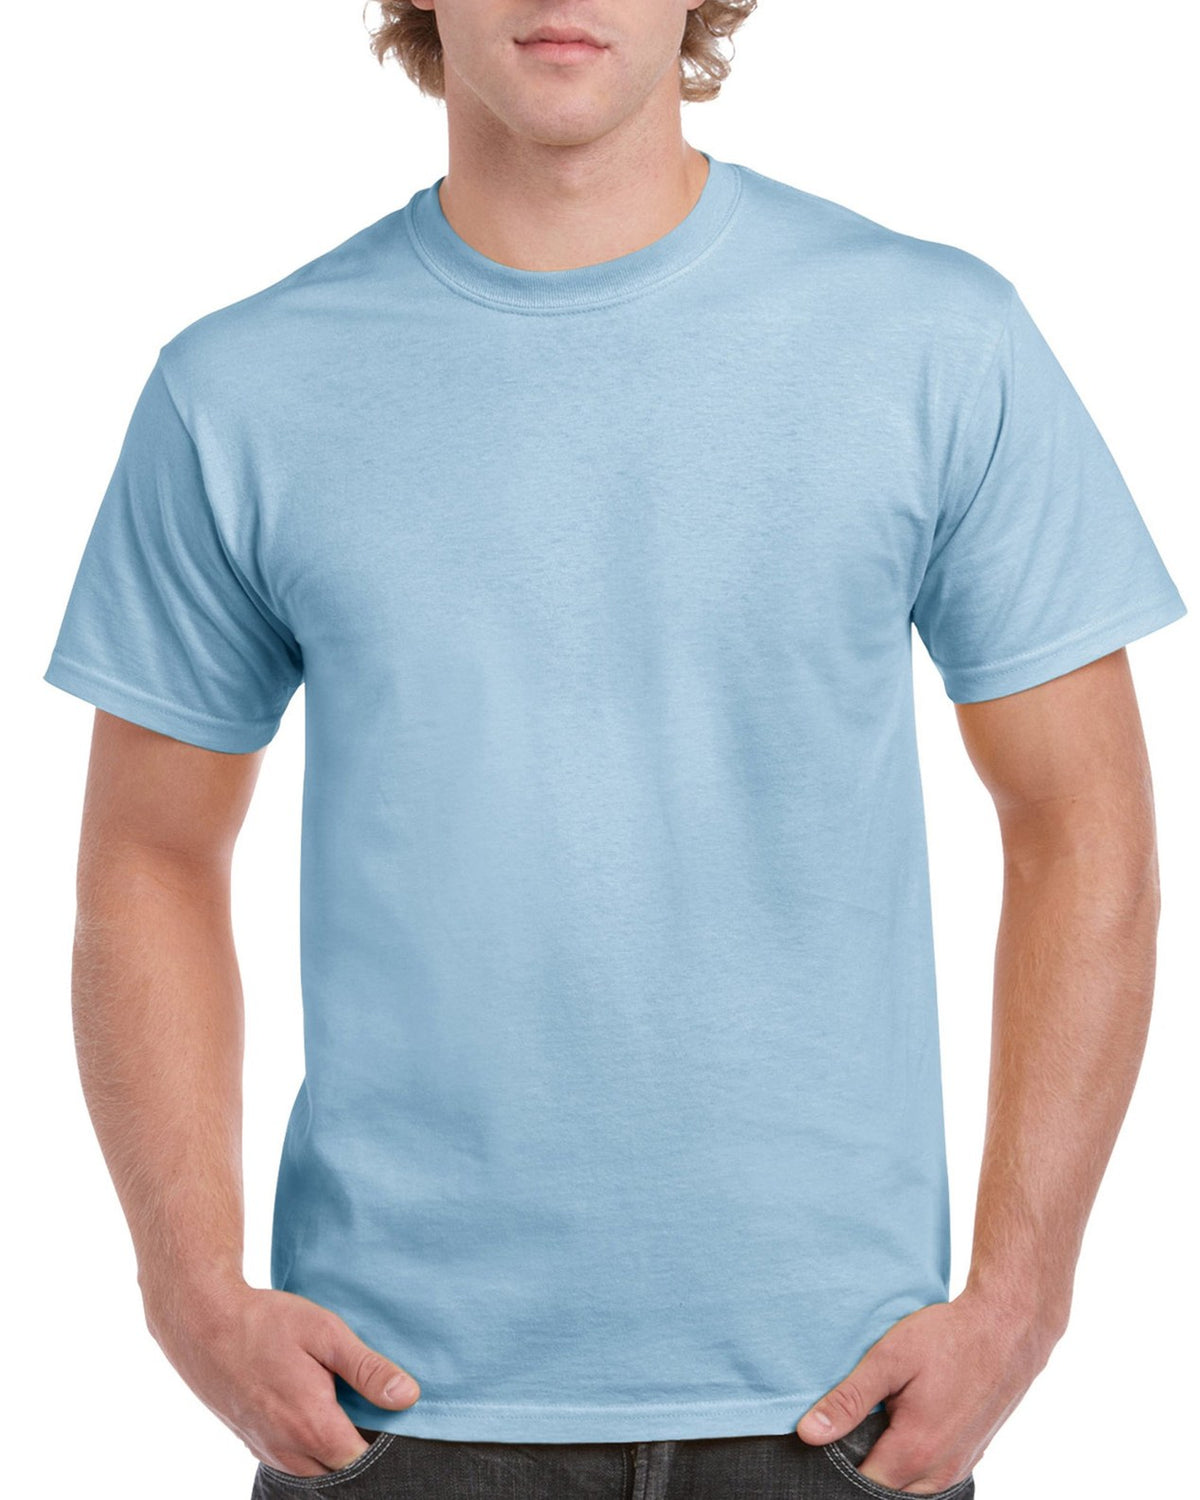 Gildan 5000 Heavy Wholesale Cotton S-M-L-XL – oz T-Shirt Aviva Quality 5.3 1st